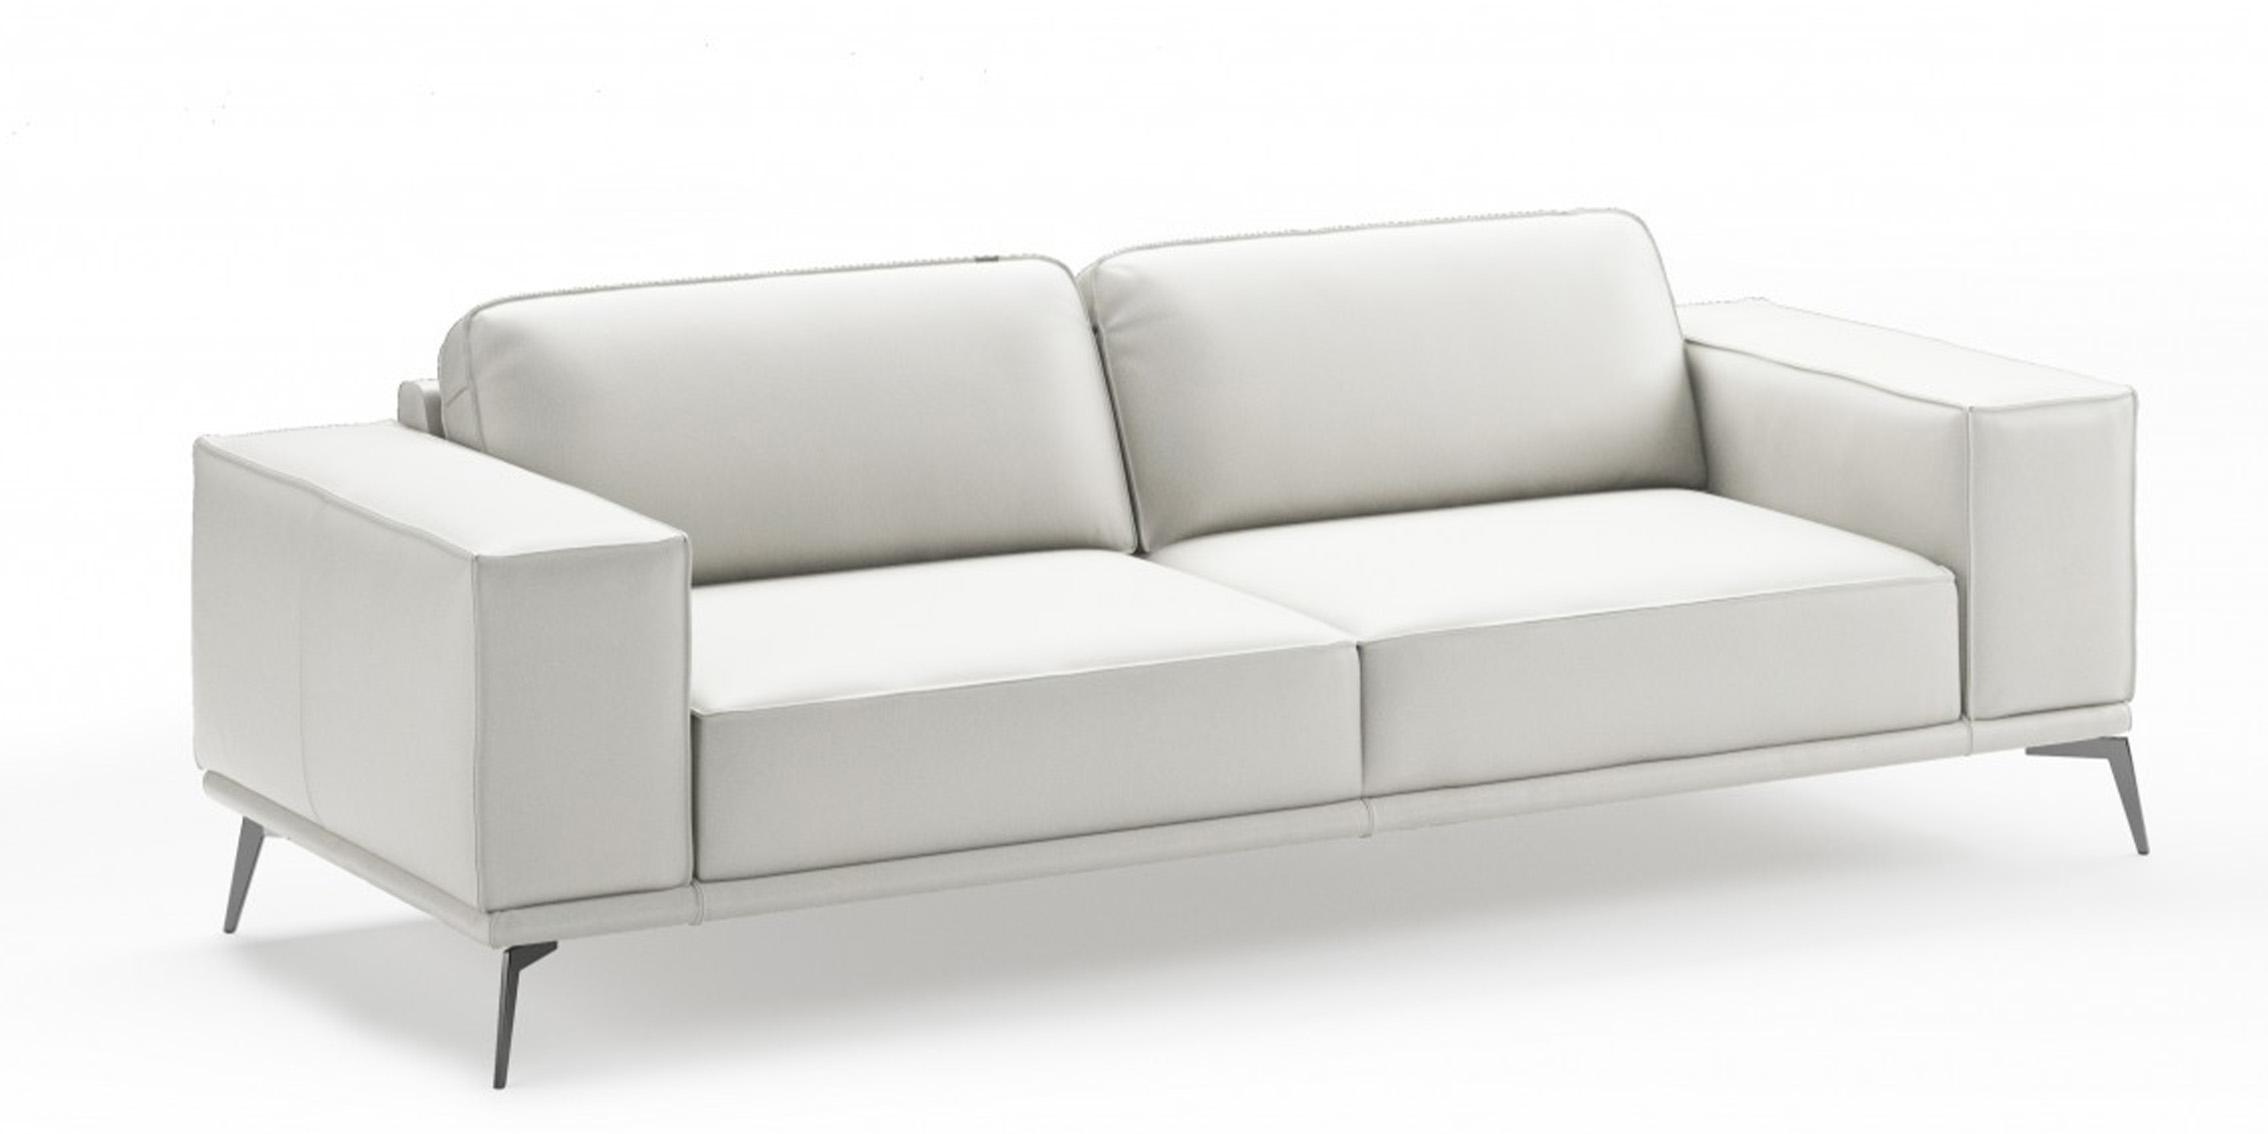 Contemporary, Modern Sofa VGCCSOHO-WHT-S VGCCSOHO-WHT-S in White Italian Leather